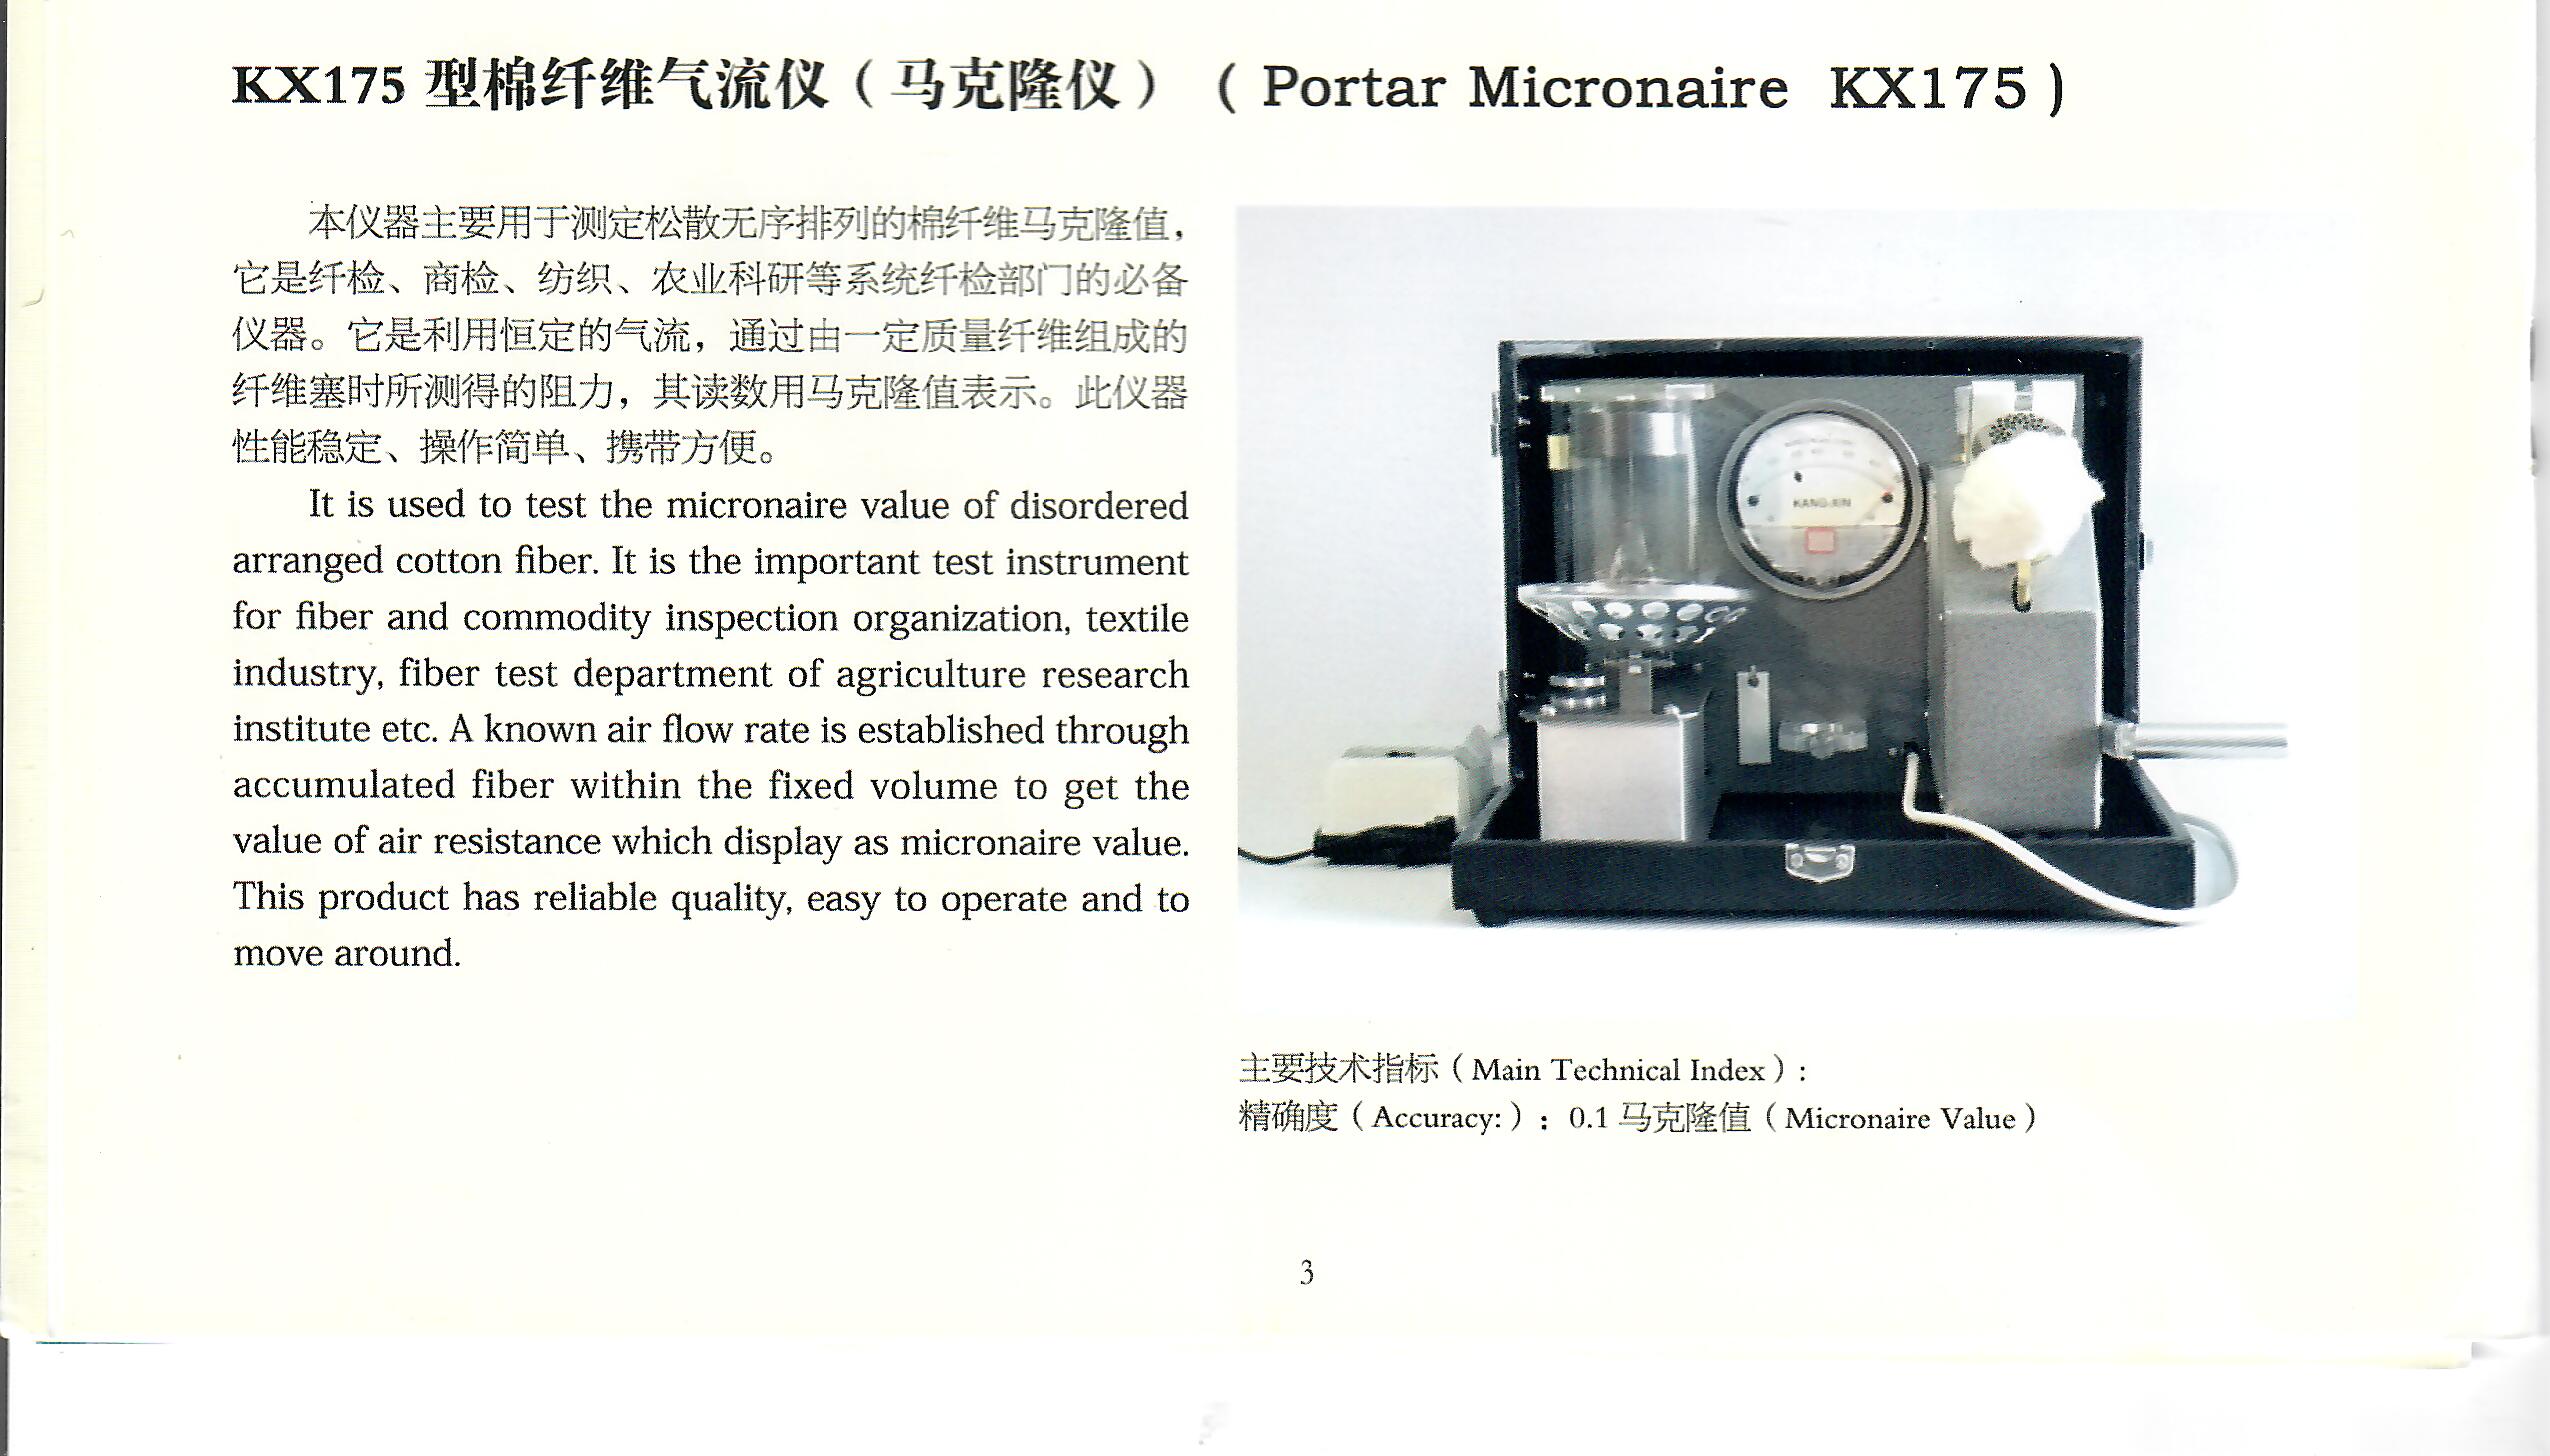 4、KX175棉纖維氣流儀.jpg